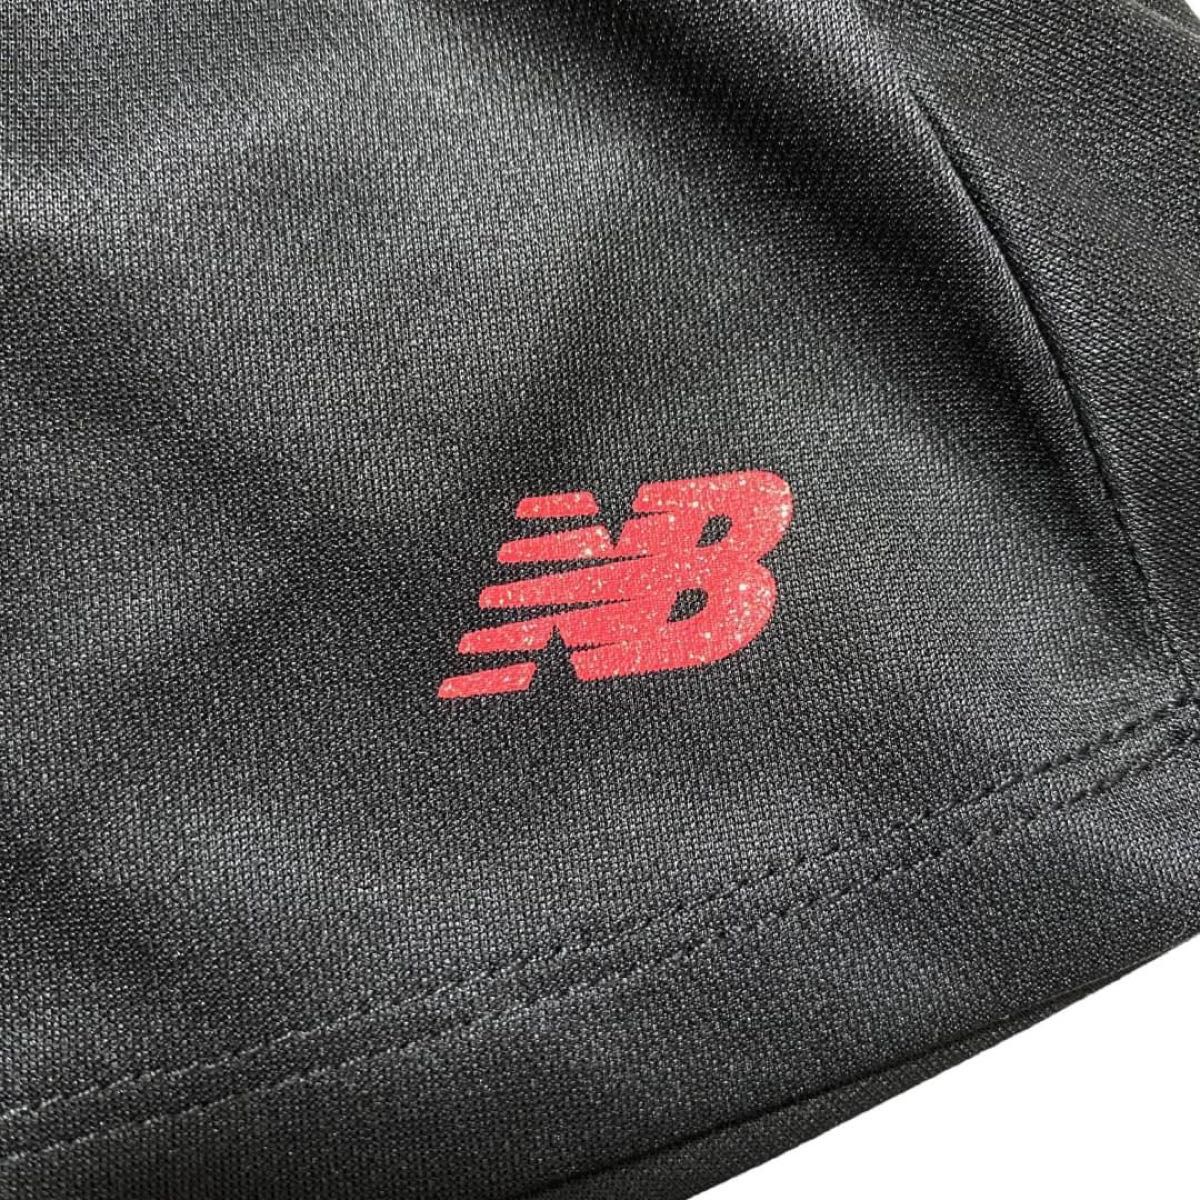 New Balance ニューバランス ゴルフワンピース サイズM ブラック ポリエステル素材 ワンポイントロゴ ゴルフウェア